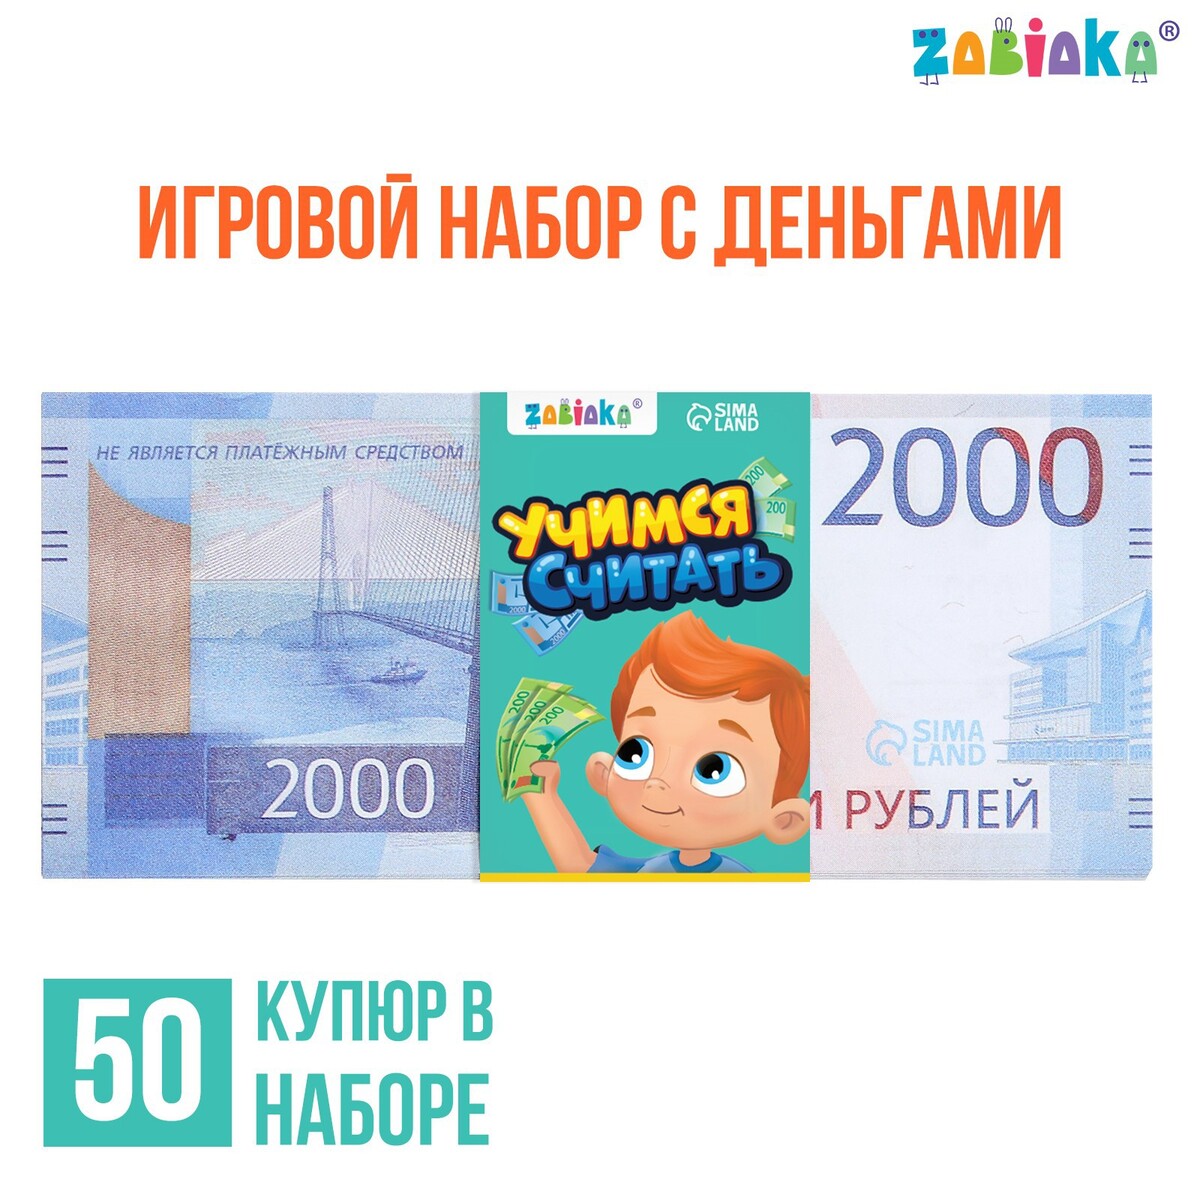 Игровой набор денег игровой набор денег учимся считать 1000 рублей 50 купюр